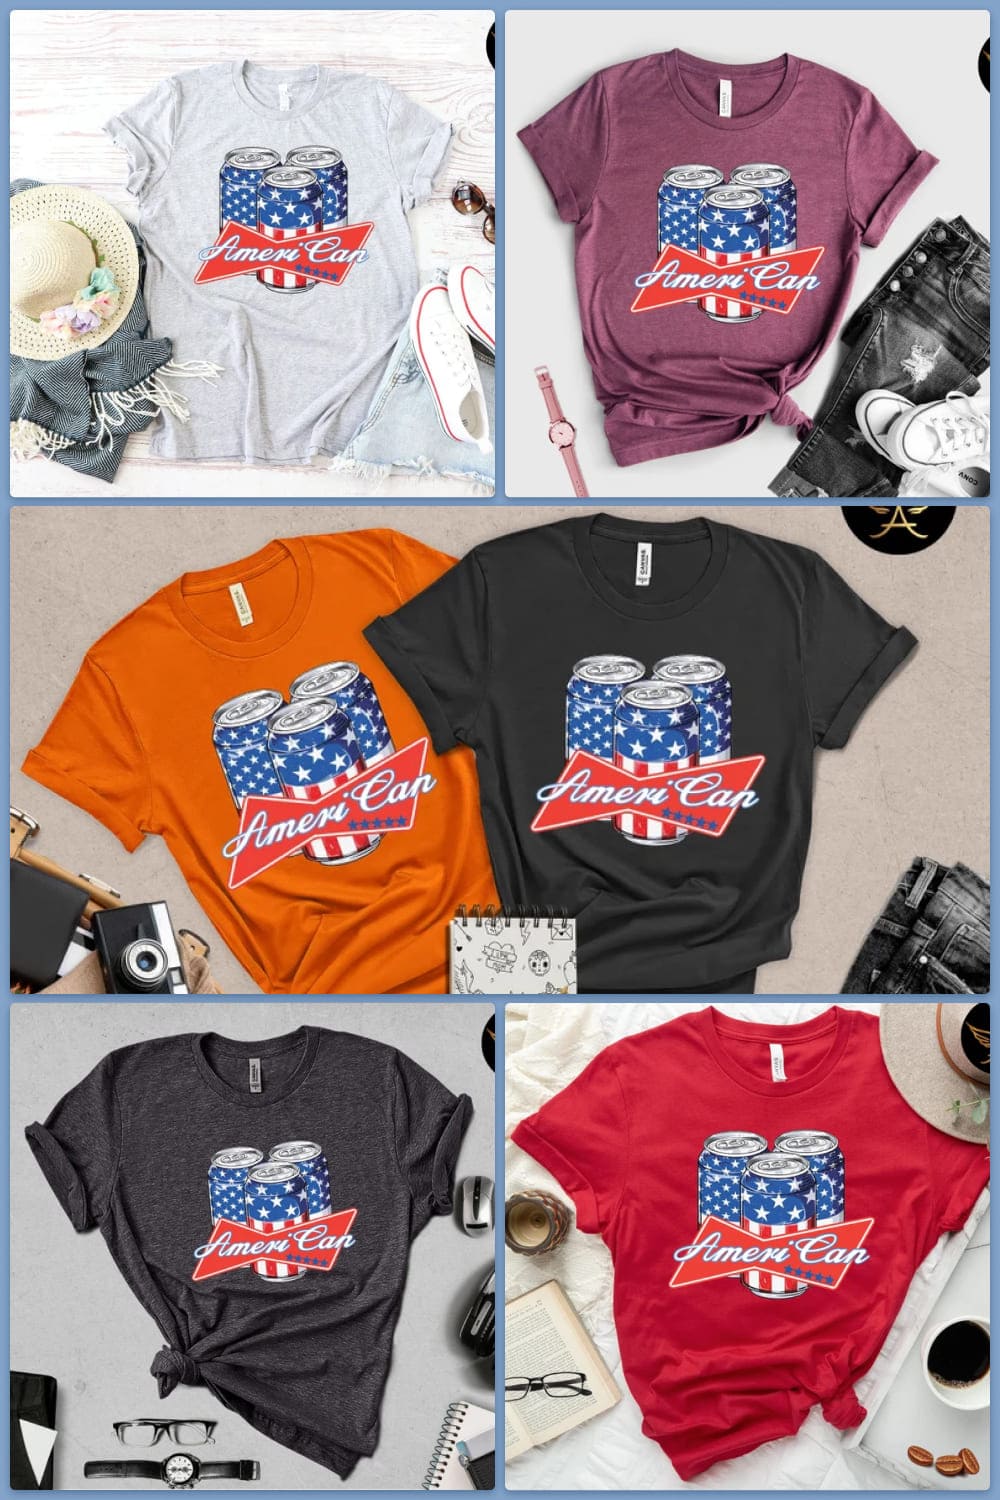 Super Patriot Men's T-Shirt